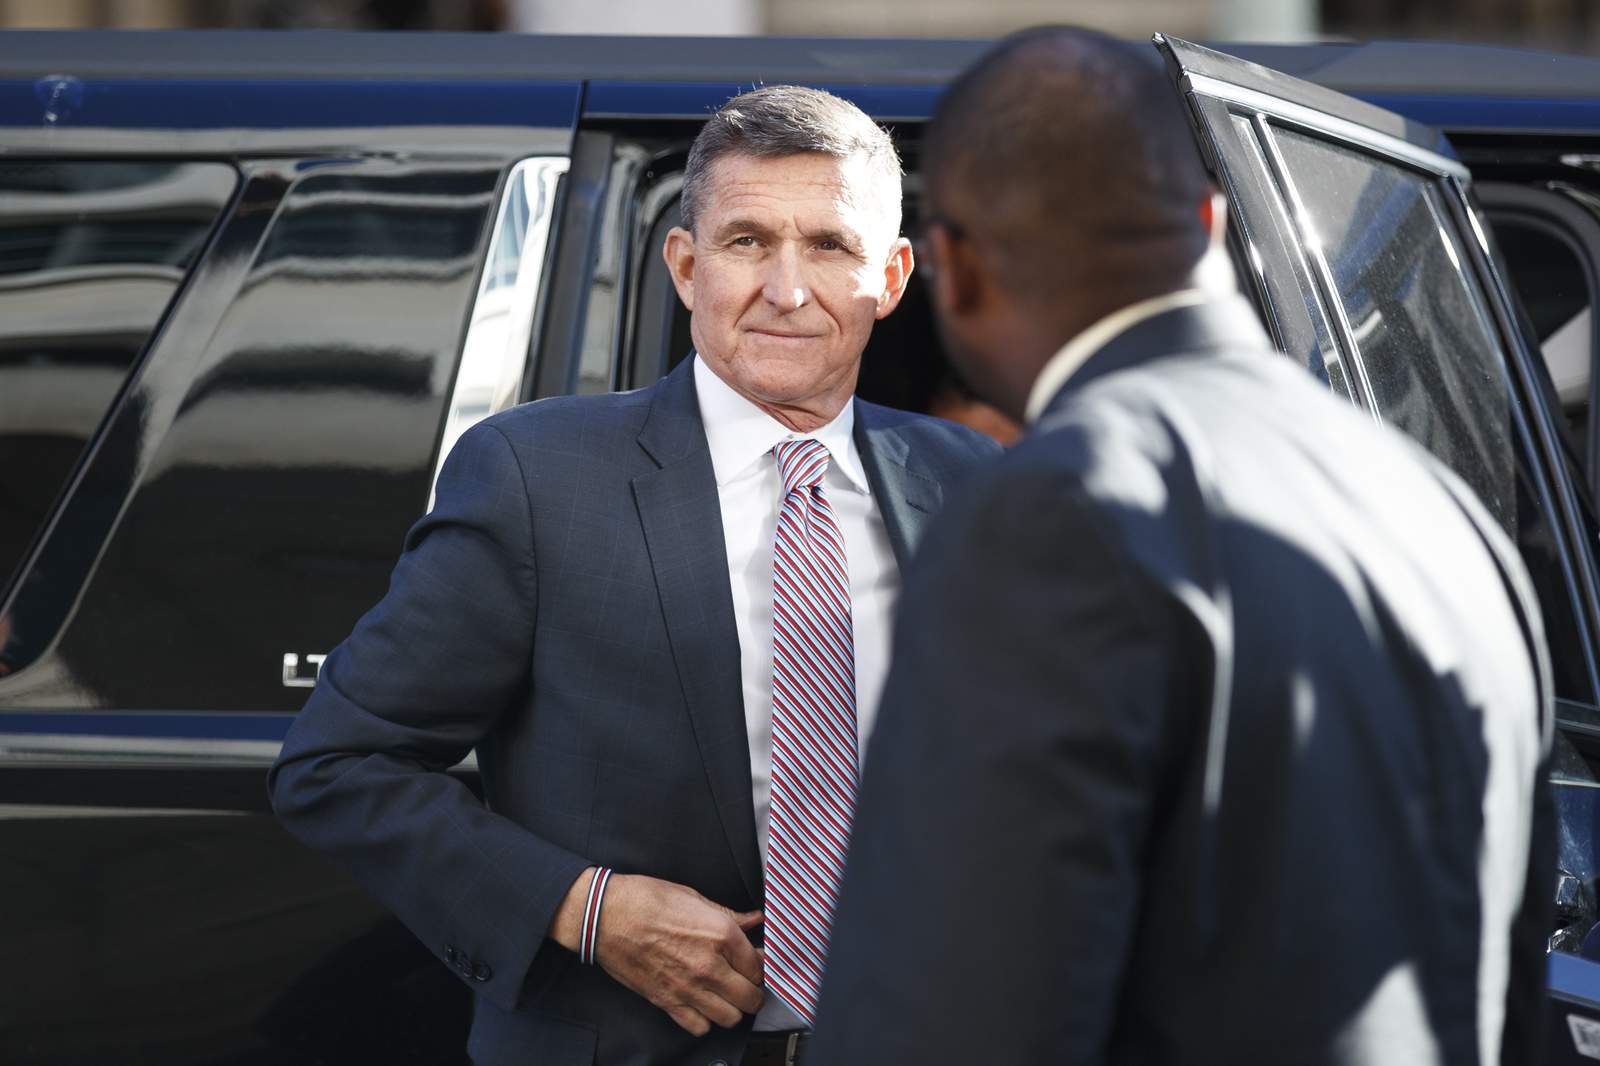 Judge dismisses Flynn case following pardon from Trump